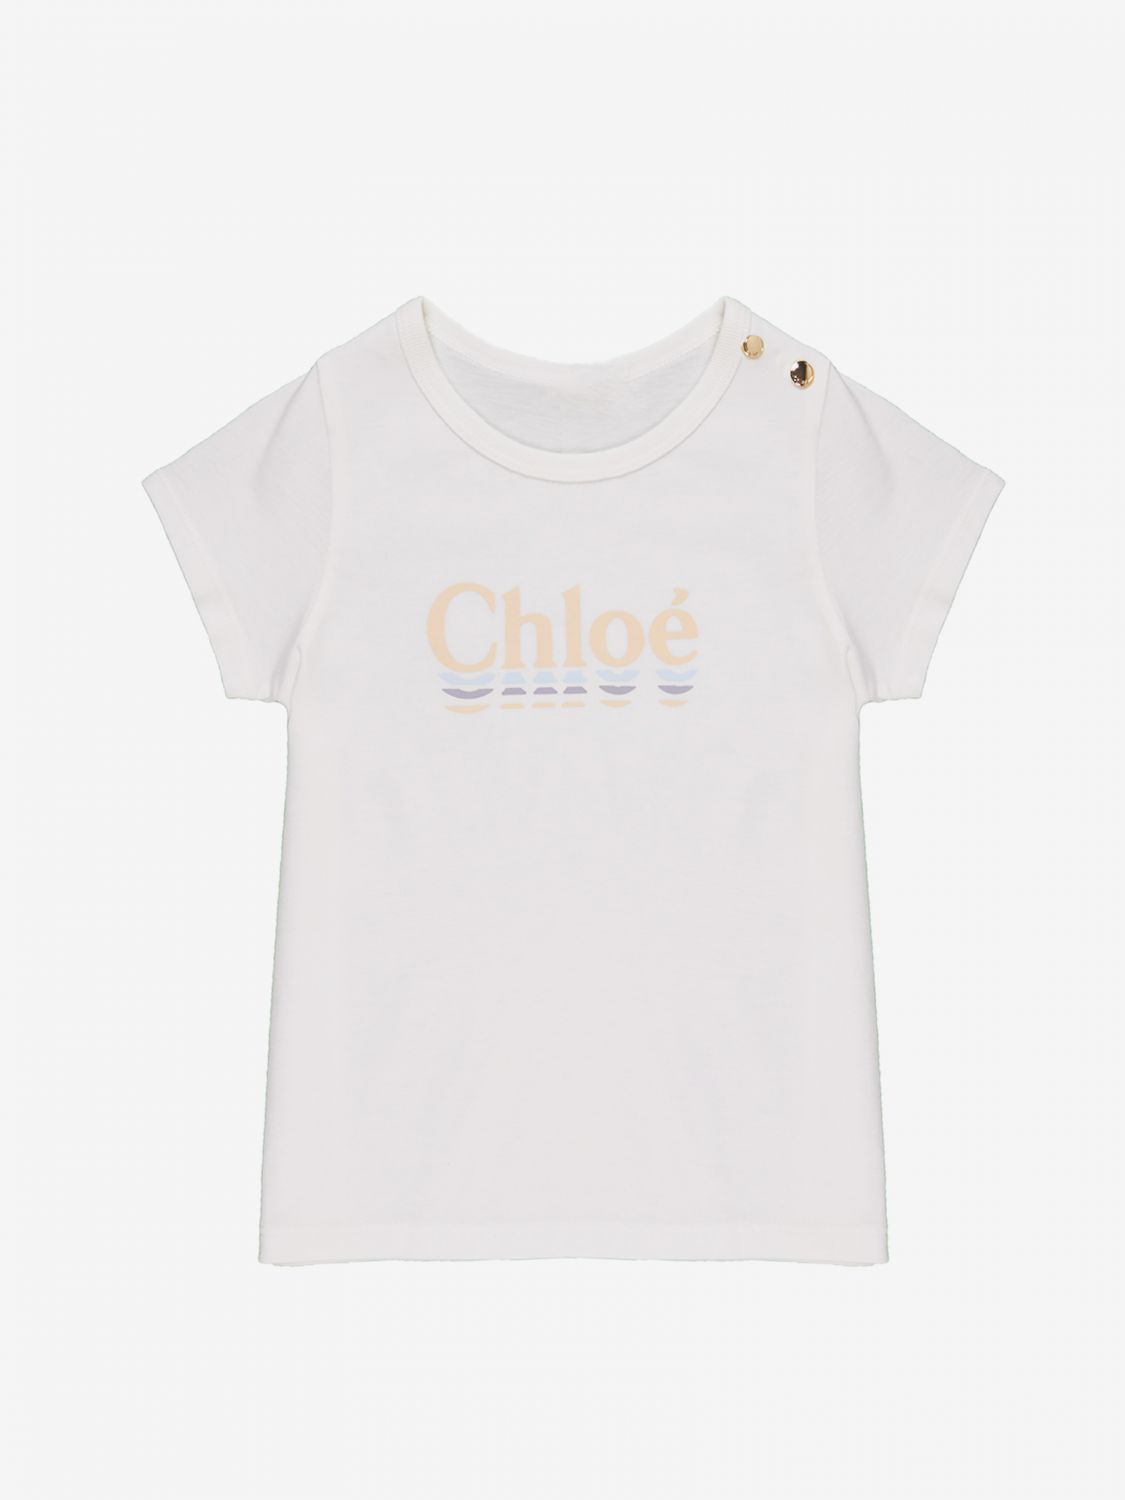 CHLOÉ: t-shirt with logo - White | Chloé t-shirt C15B15 online on ...